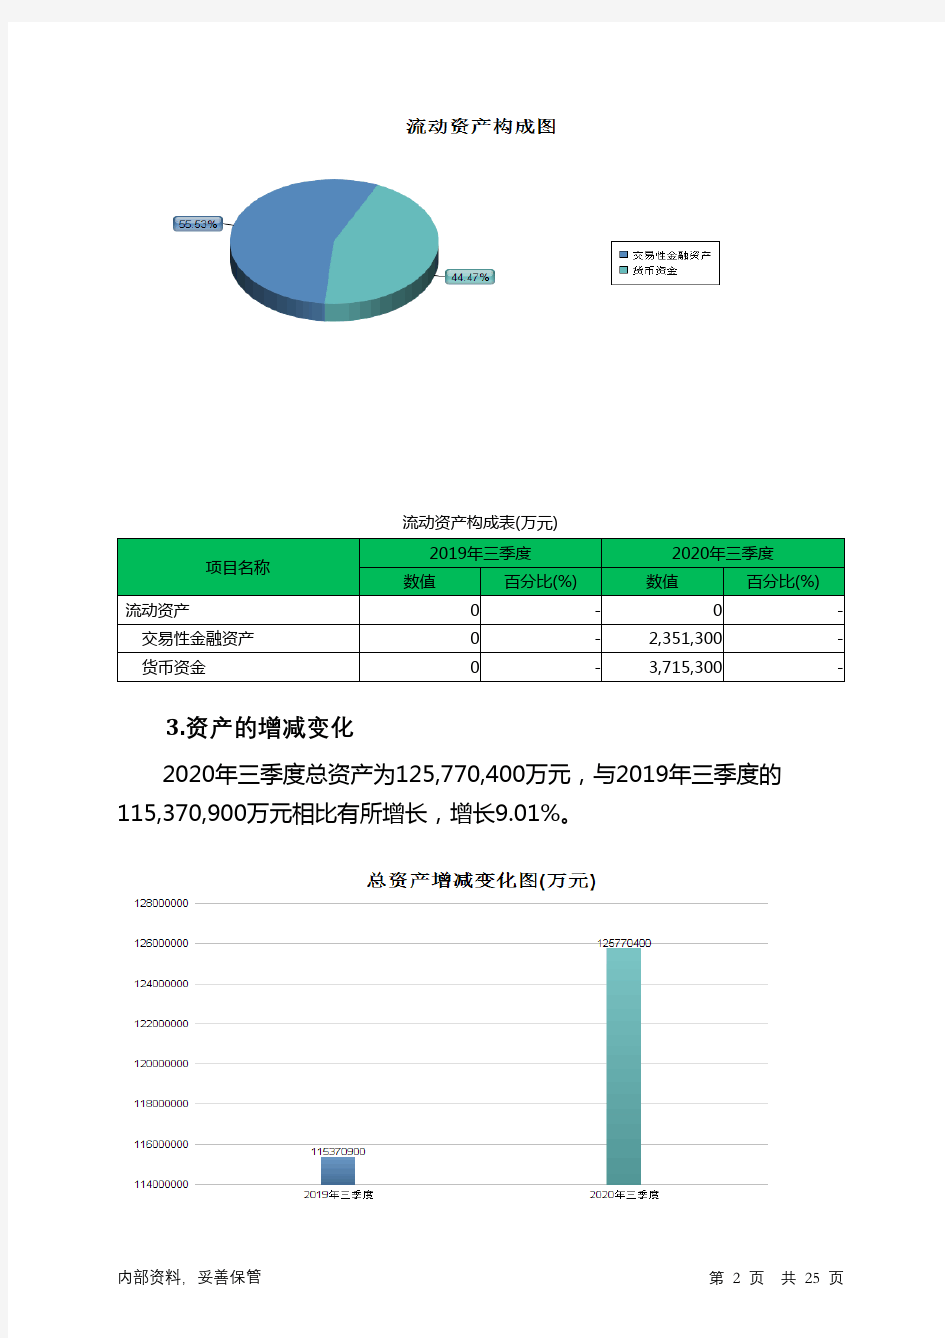 中国人保2020年三季度财务分析详细报告